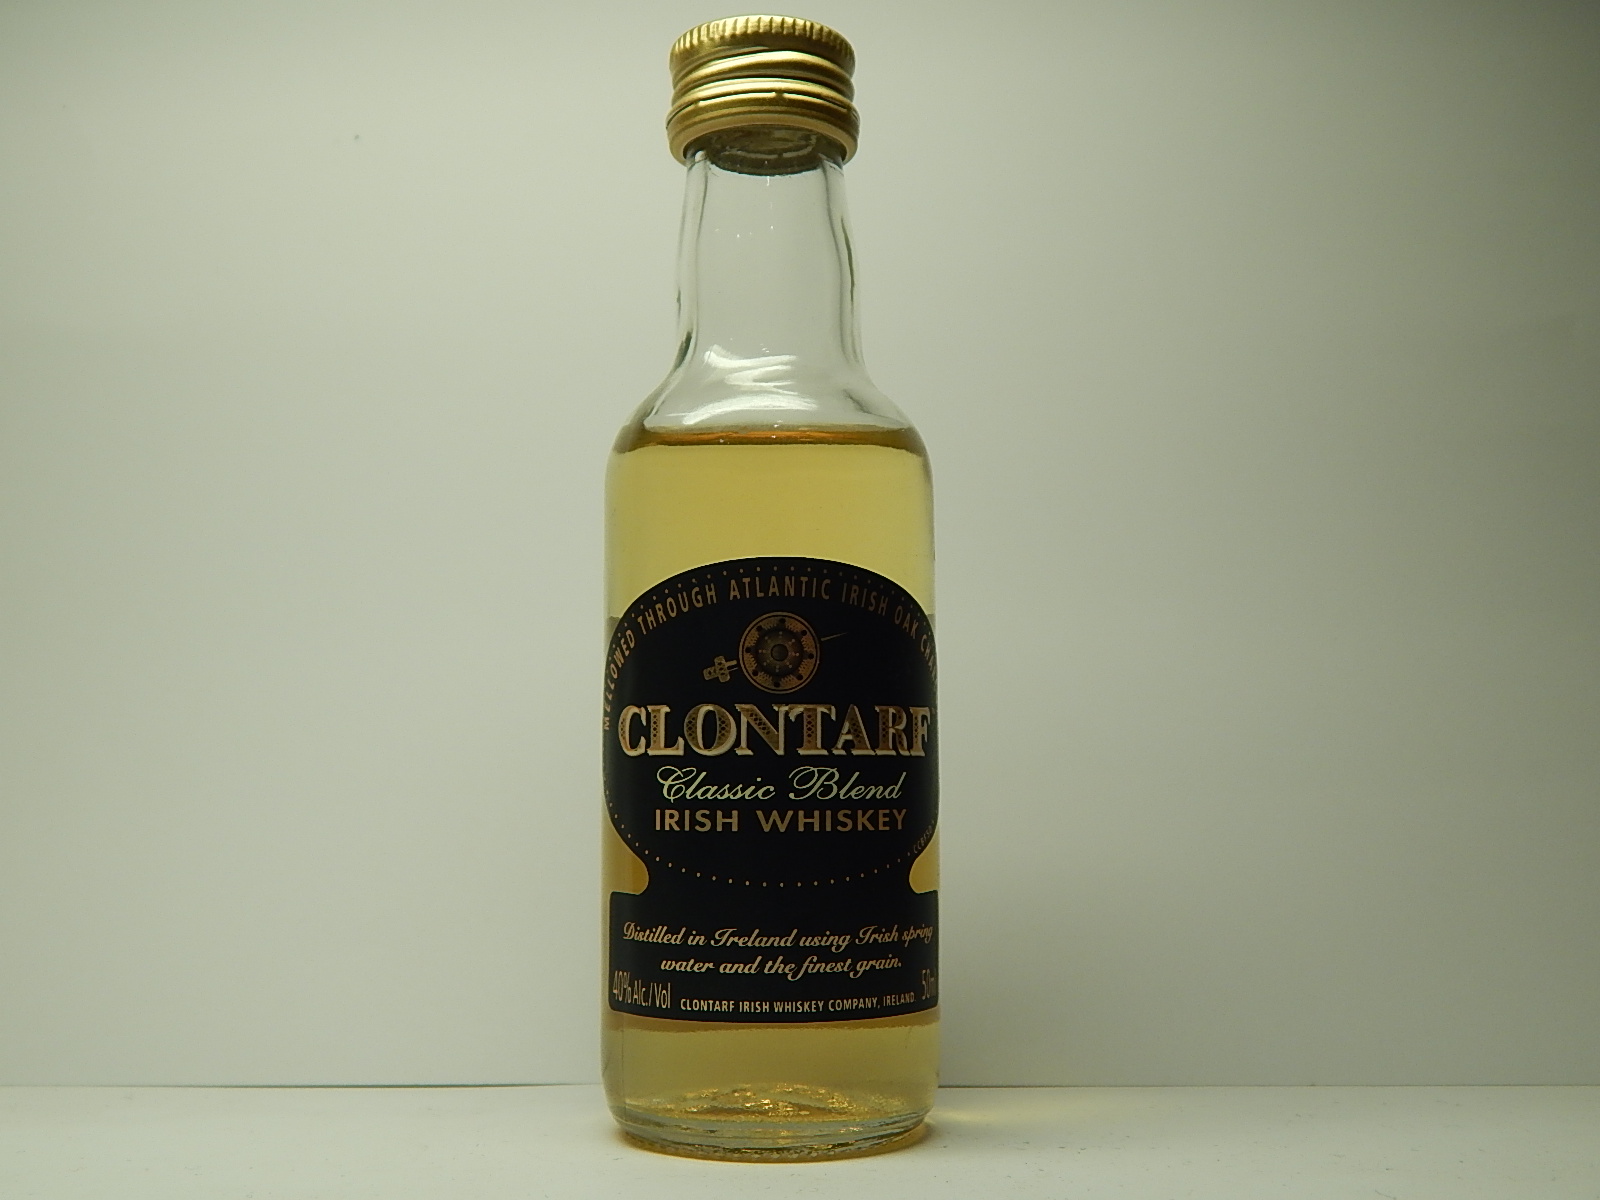 Classic Blend Irish Whiskey